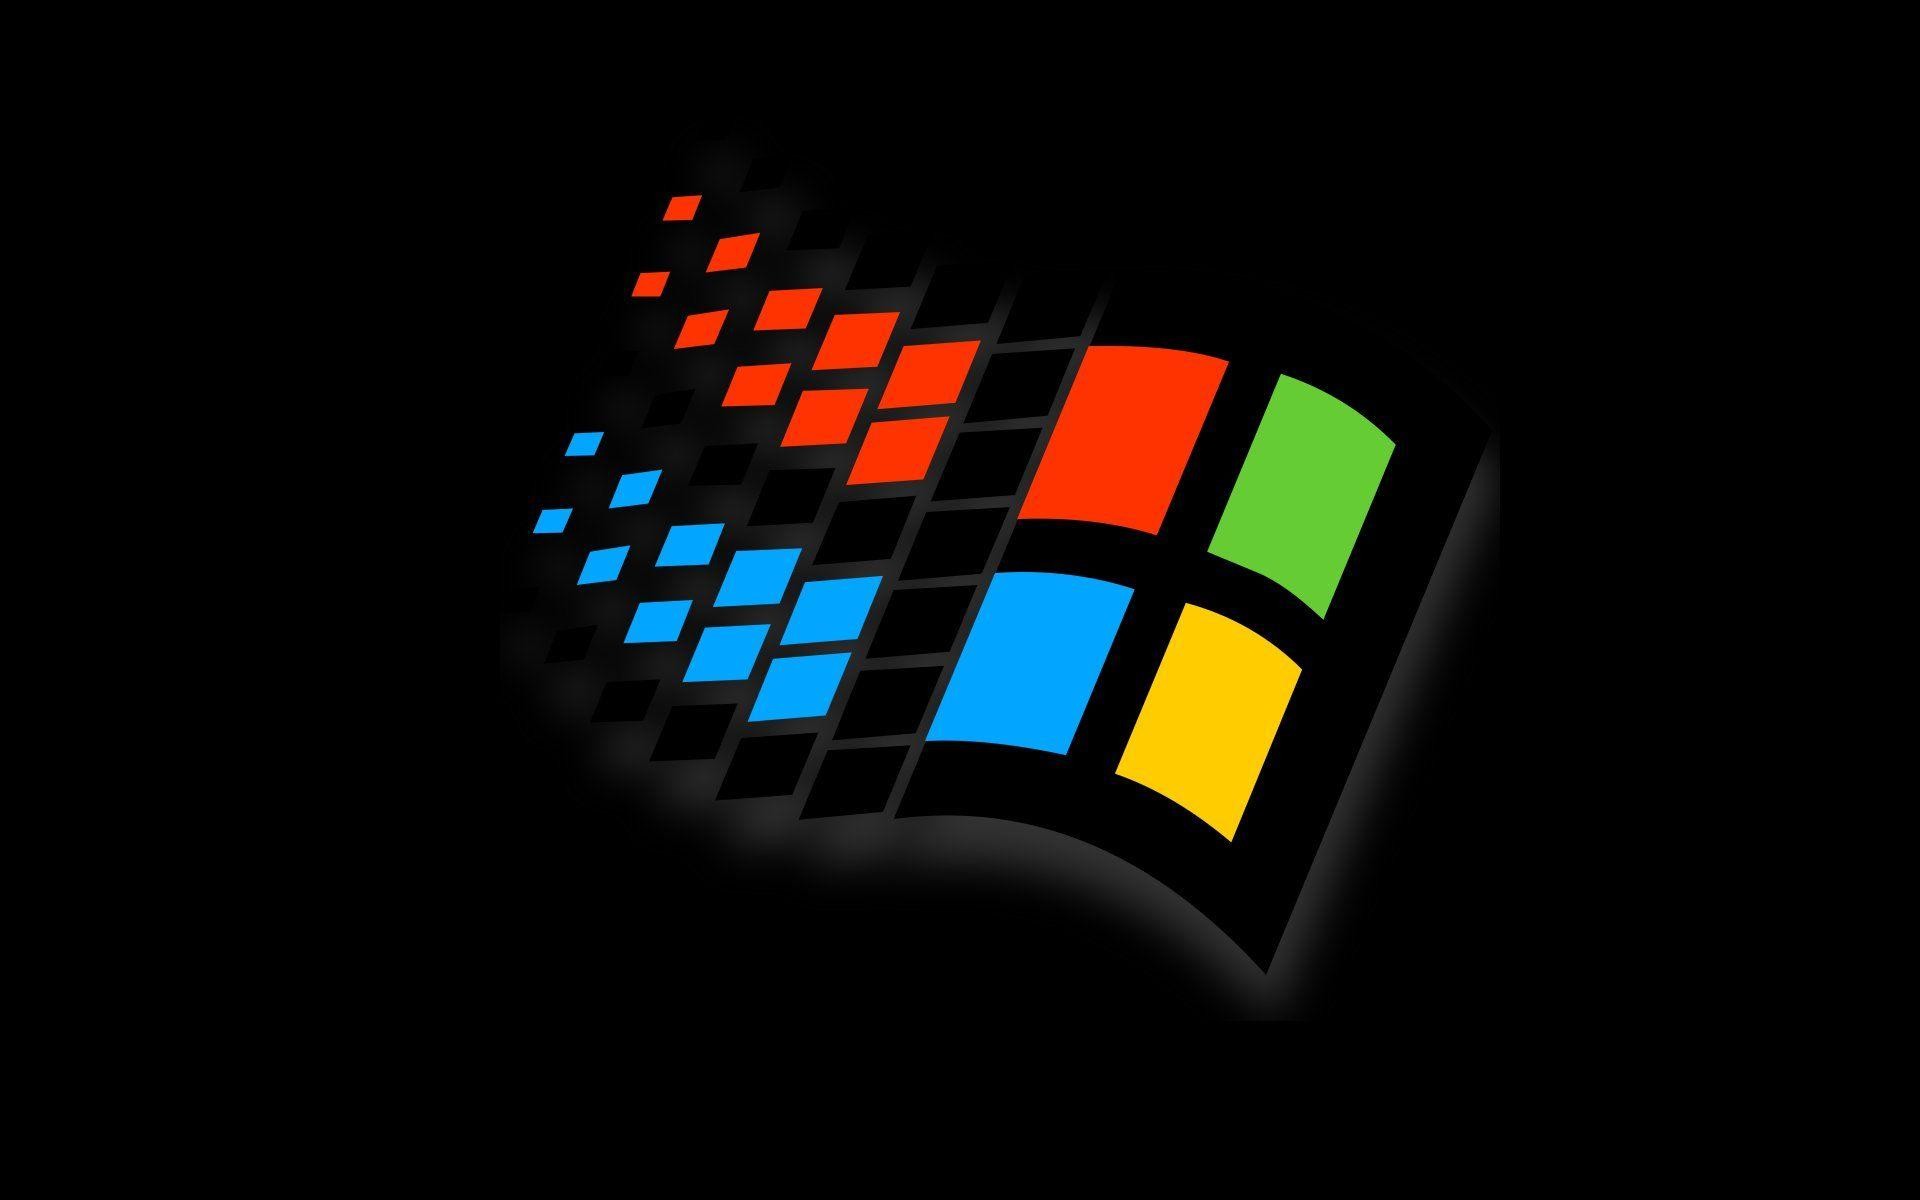 윈도우 95 벽지,그래픽 디자인,제도법,폰트,루빅스 큐브